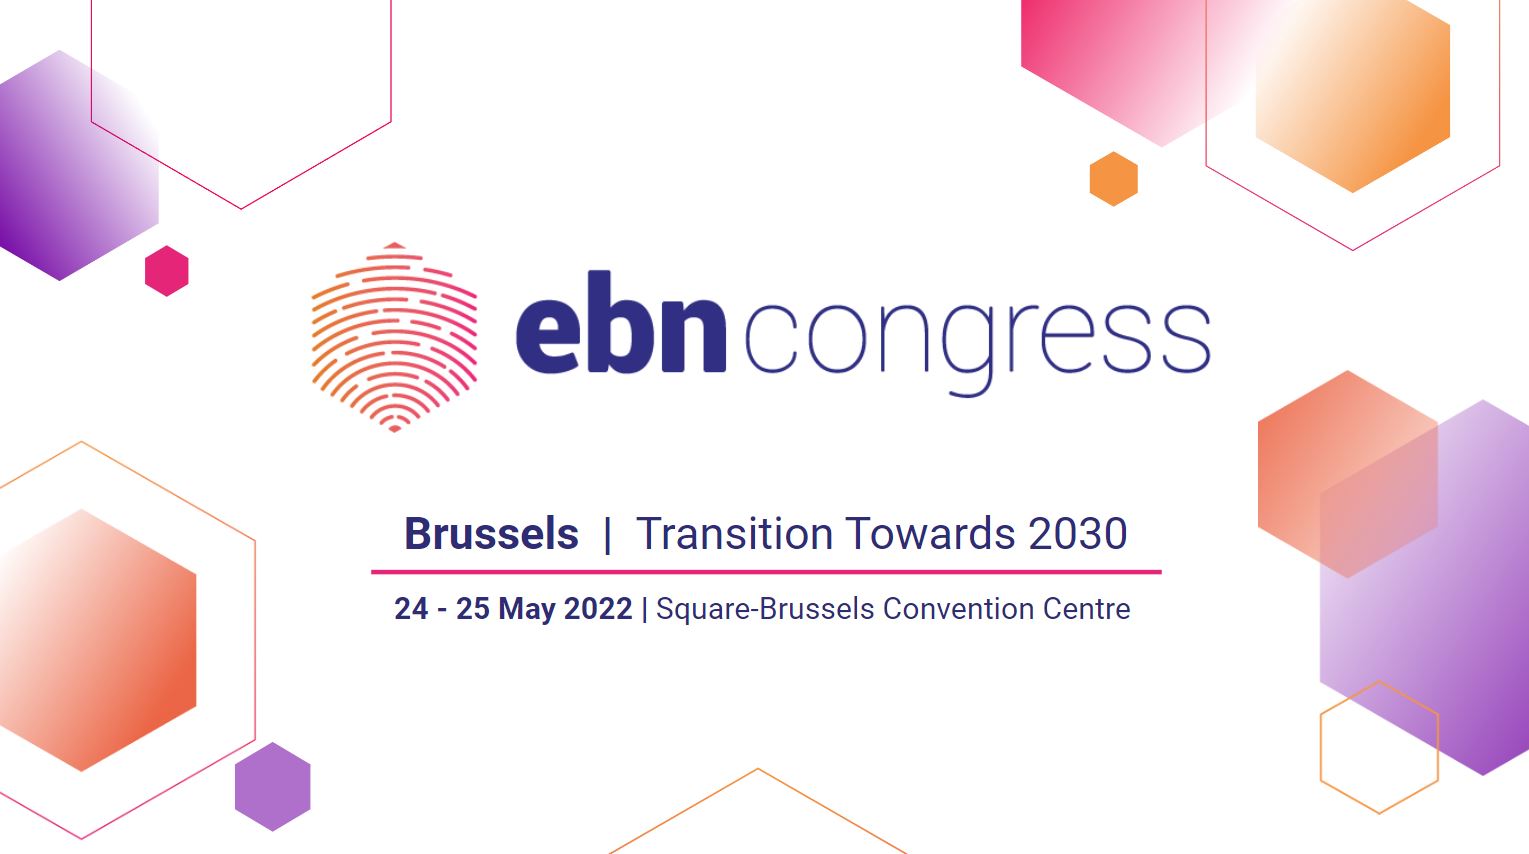 TEESMAT at the 2022 EBN Congress